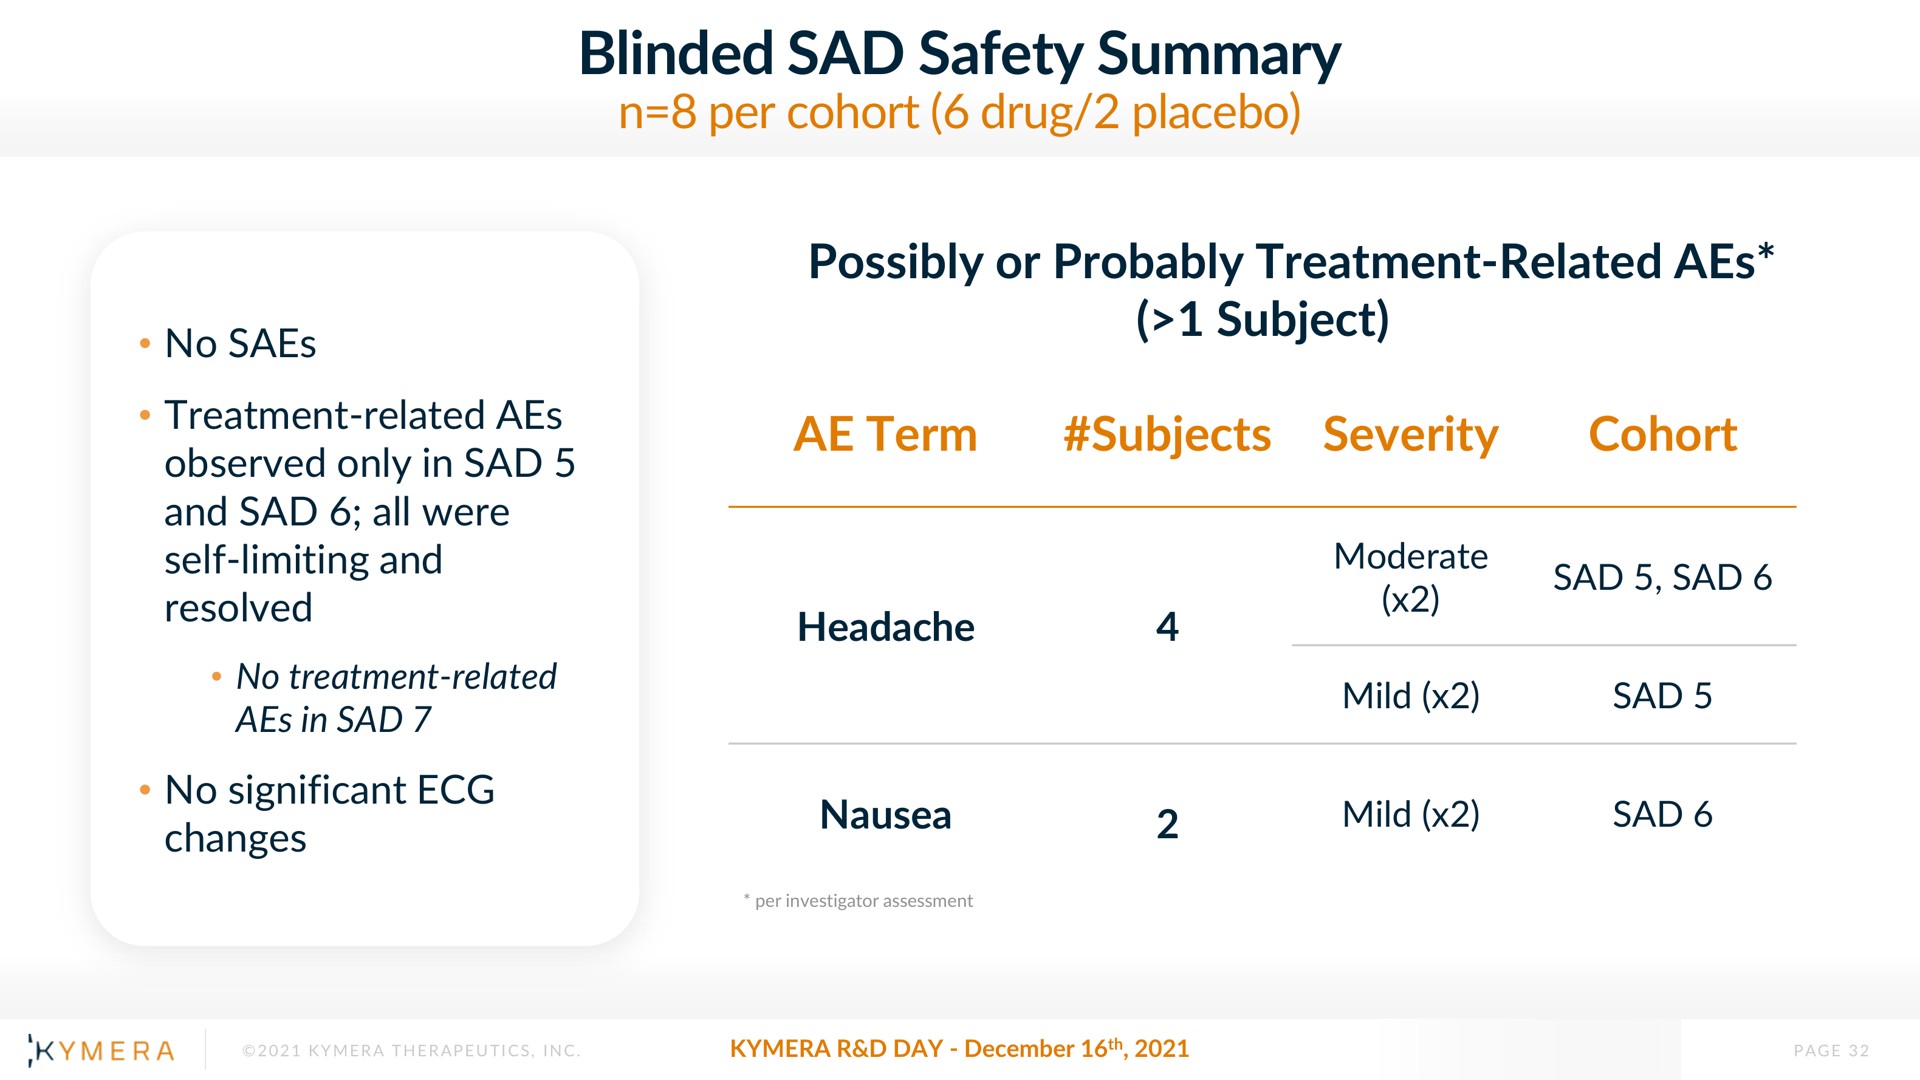 blinded sad safety summary | Kymera